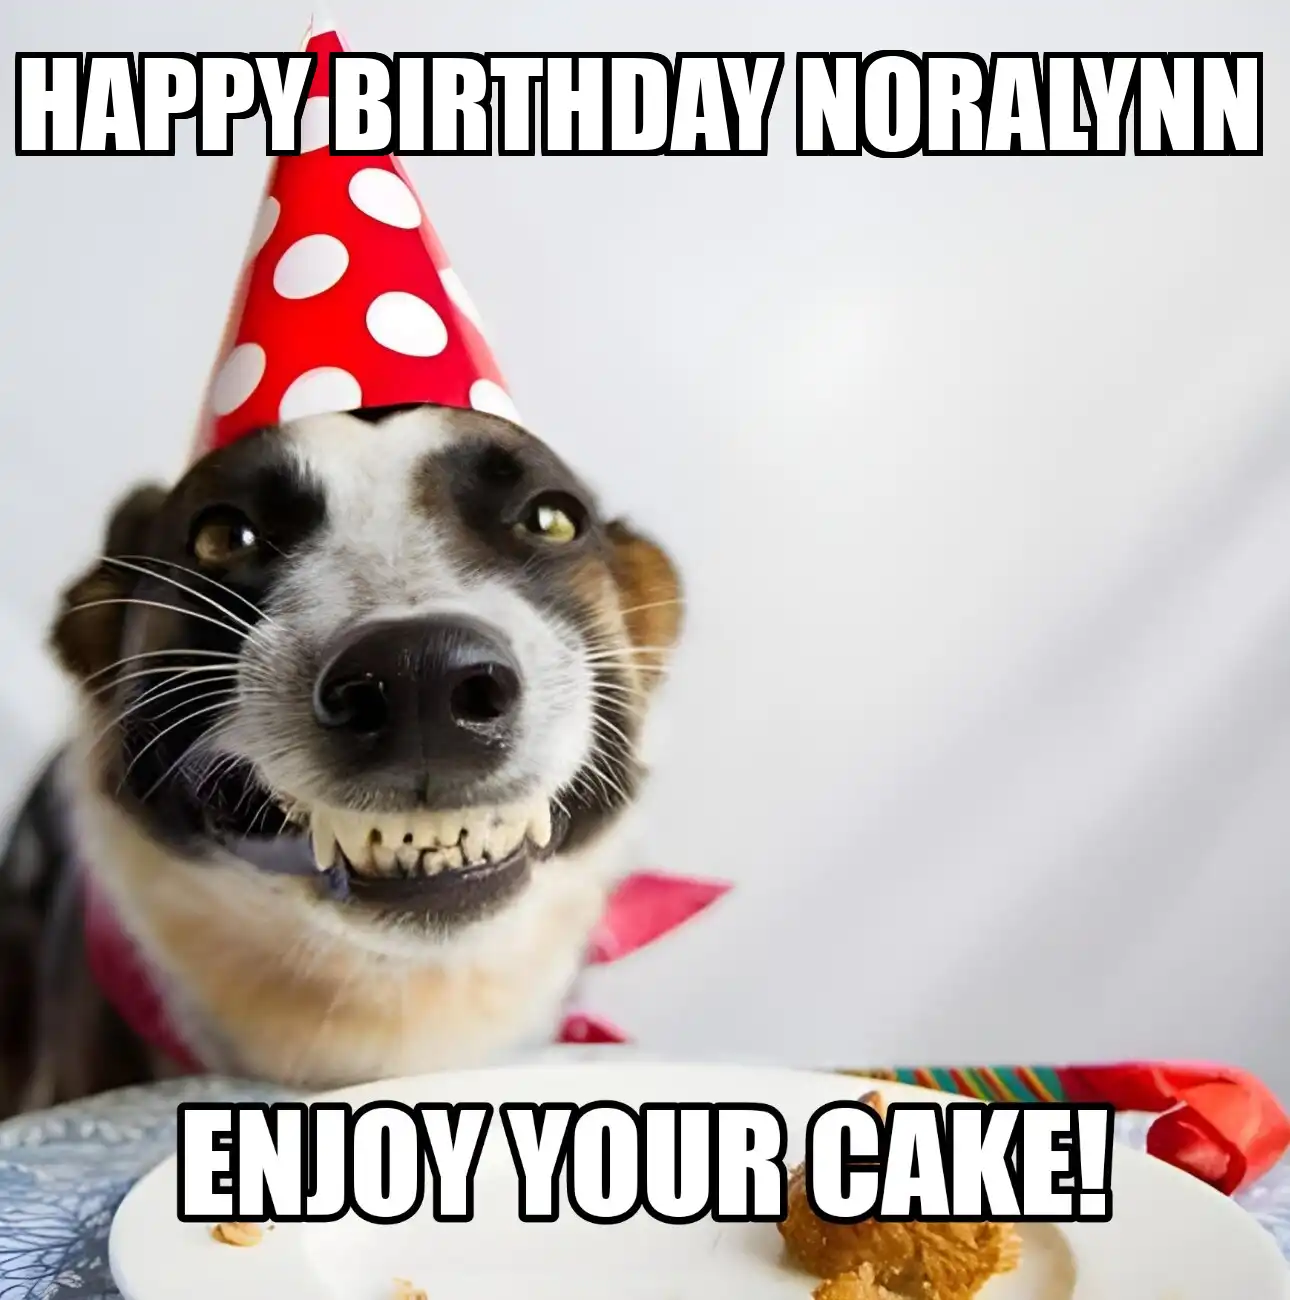 Happy Birthday Noralynn Enjoy Your Cake Dog Meme